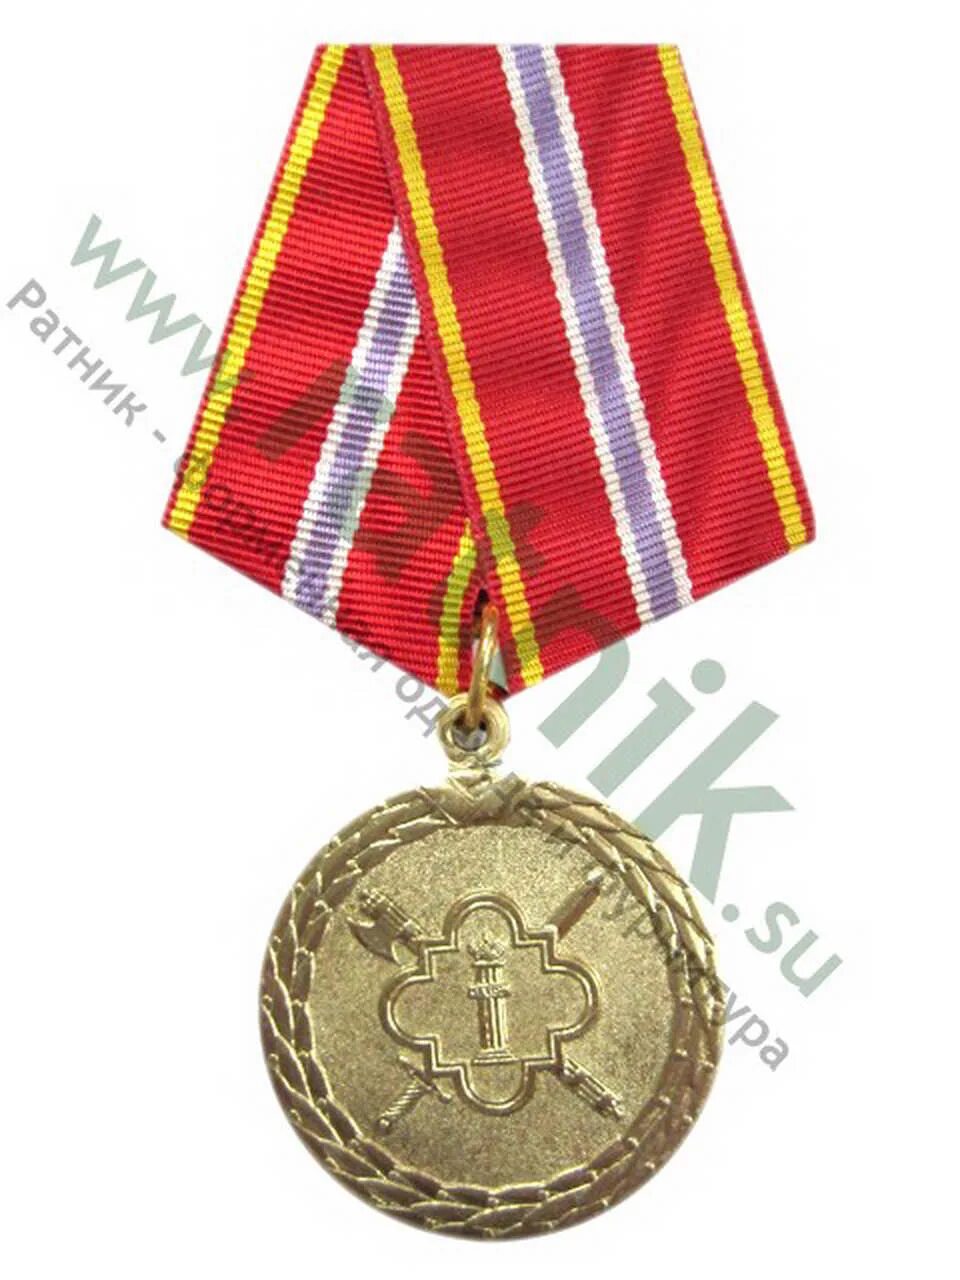 Медаль за выслугу фсин. Медаль за выслугу 10 ФСИН. ФСИН медаль степени. Медаль за усердие в службе ФСИН. Медаль ФСИН 2 степени.